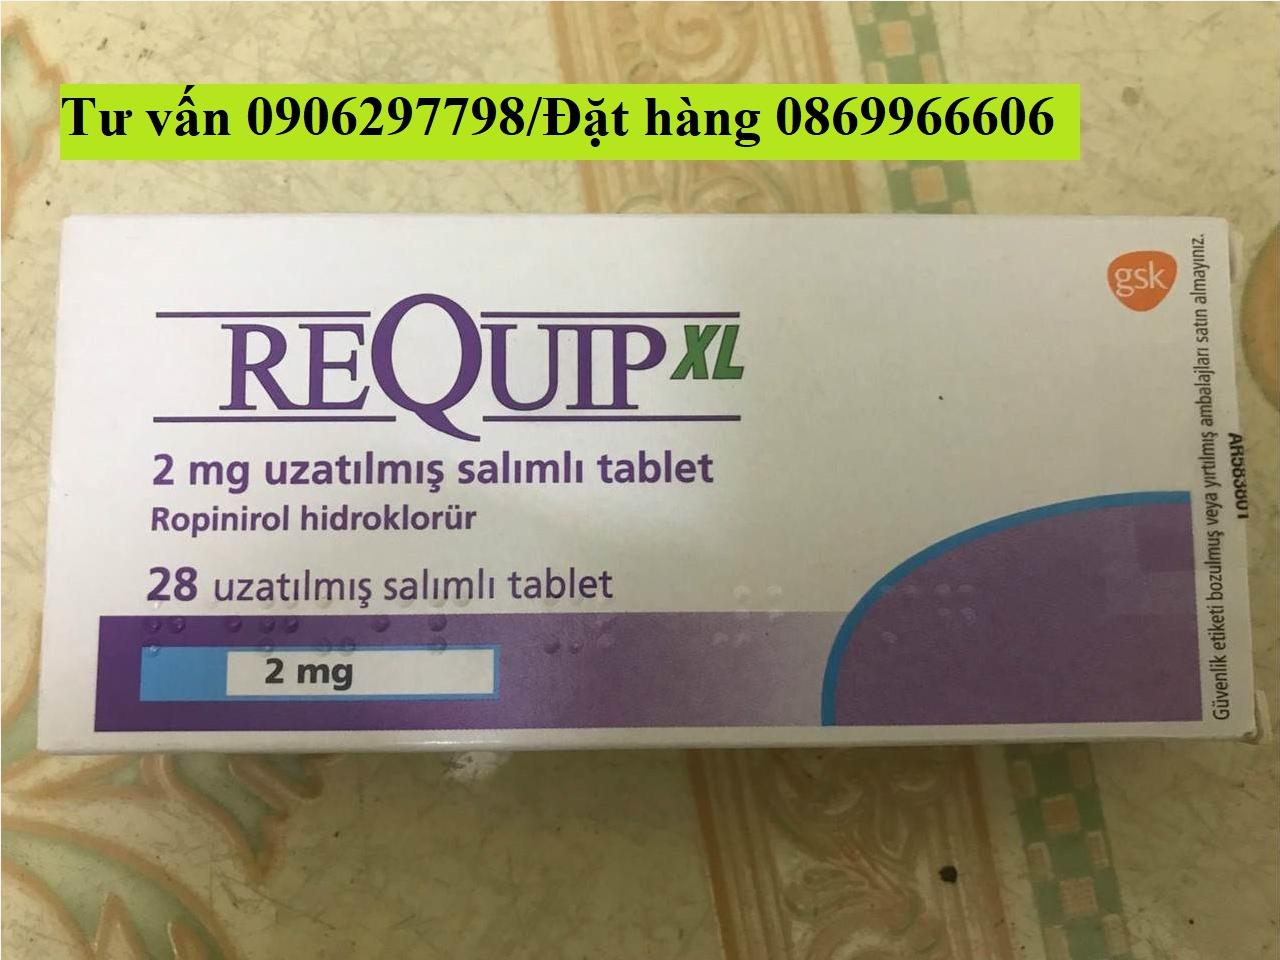 Thuốc Requip XL Ropinirole giá bao nhiêu mua ở đâu?